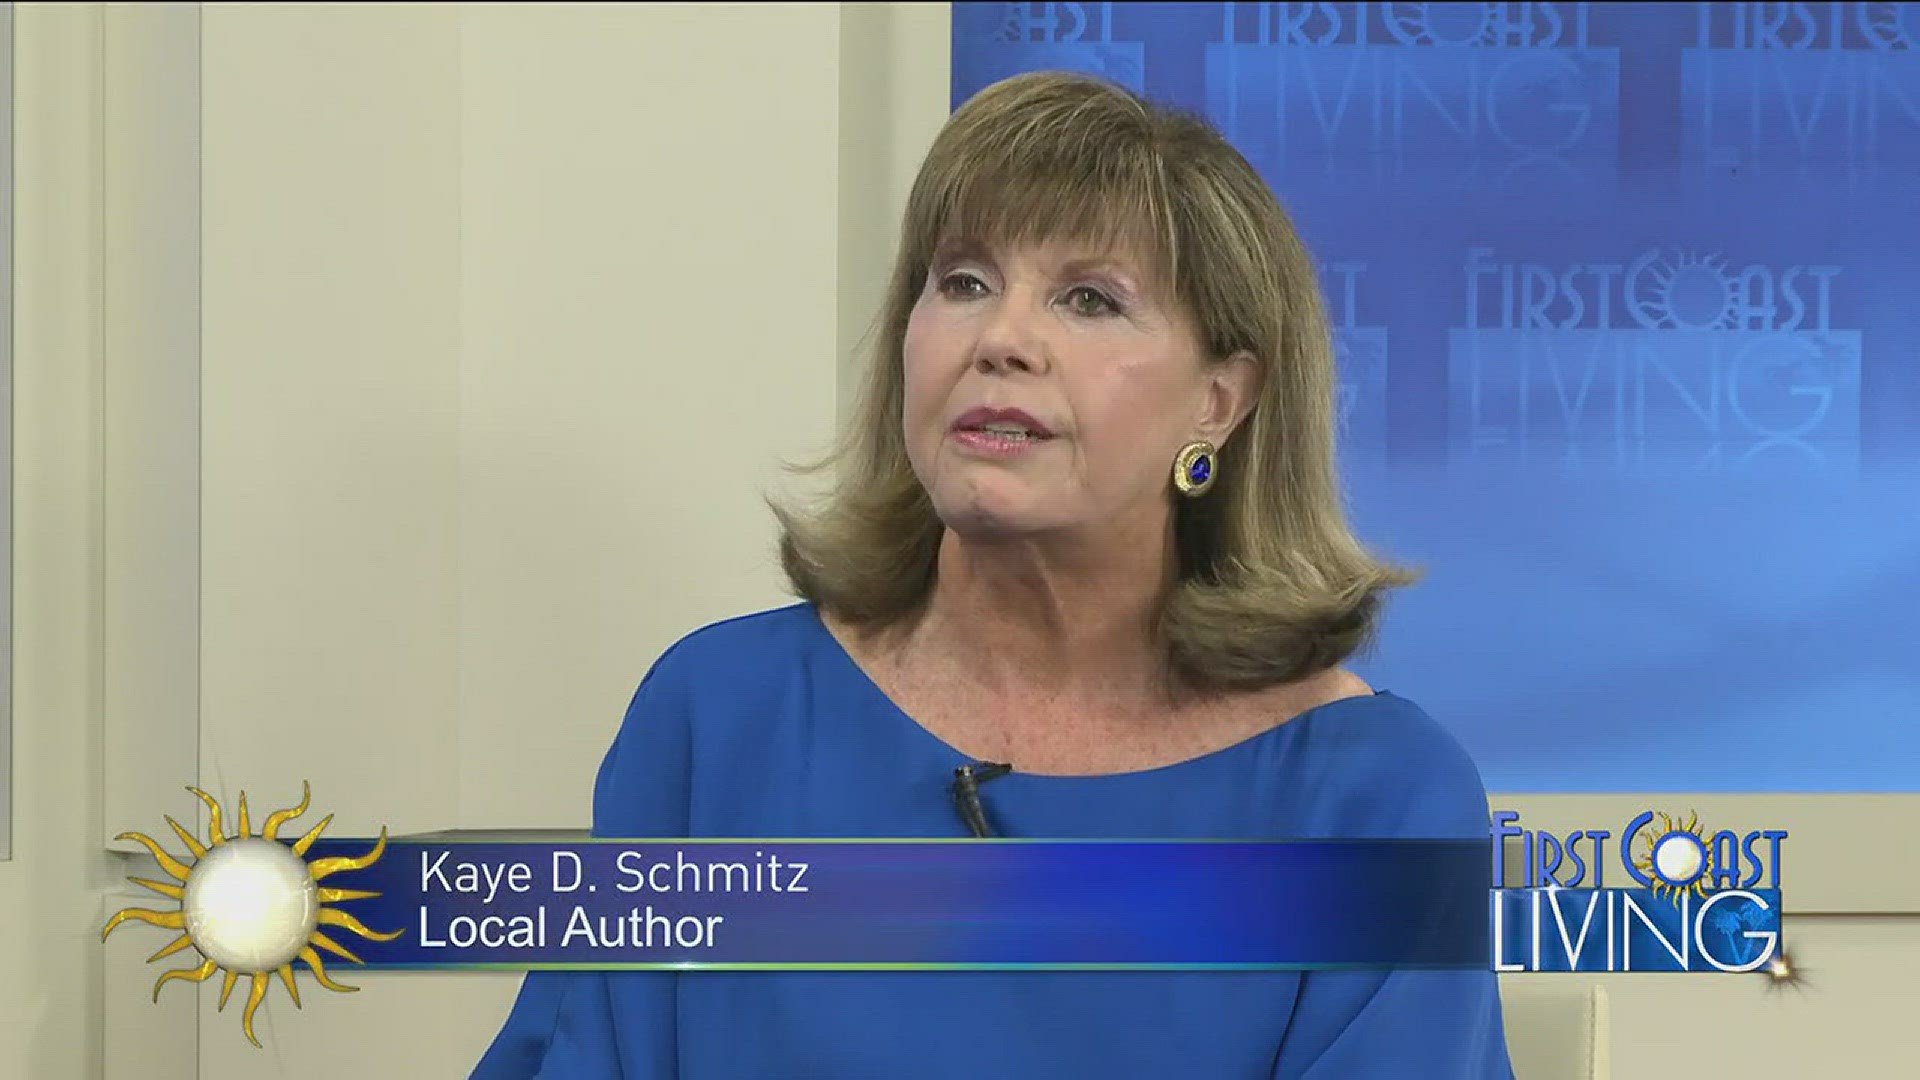 Author Kaye D. Schmitz